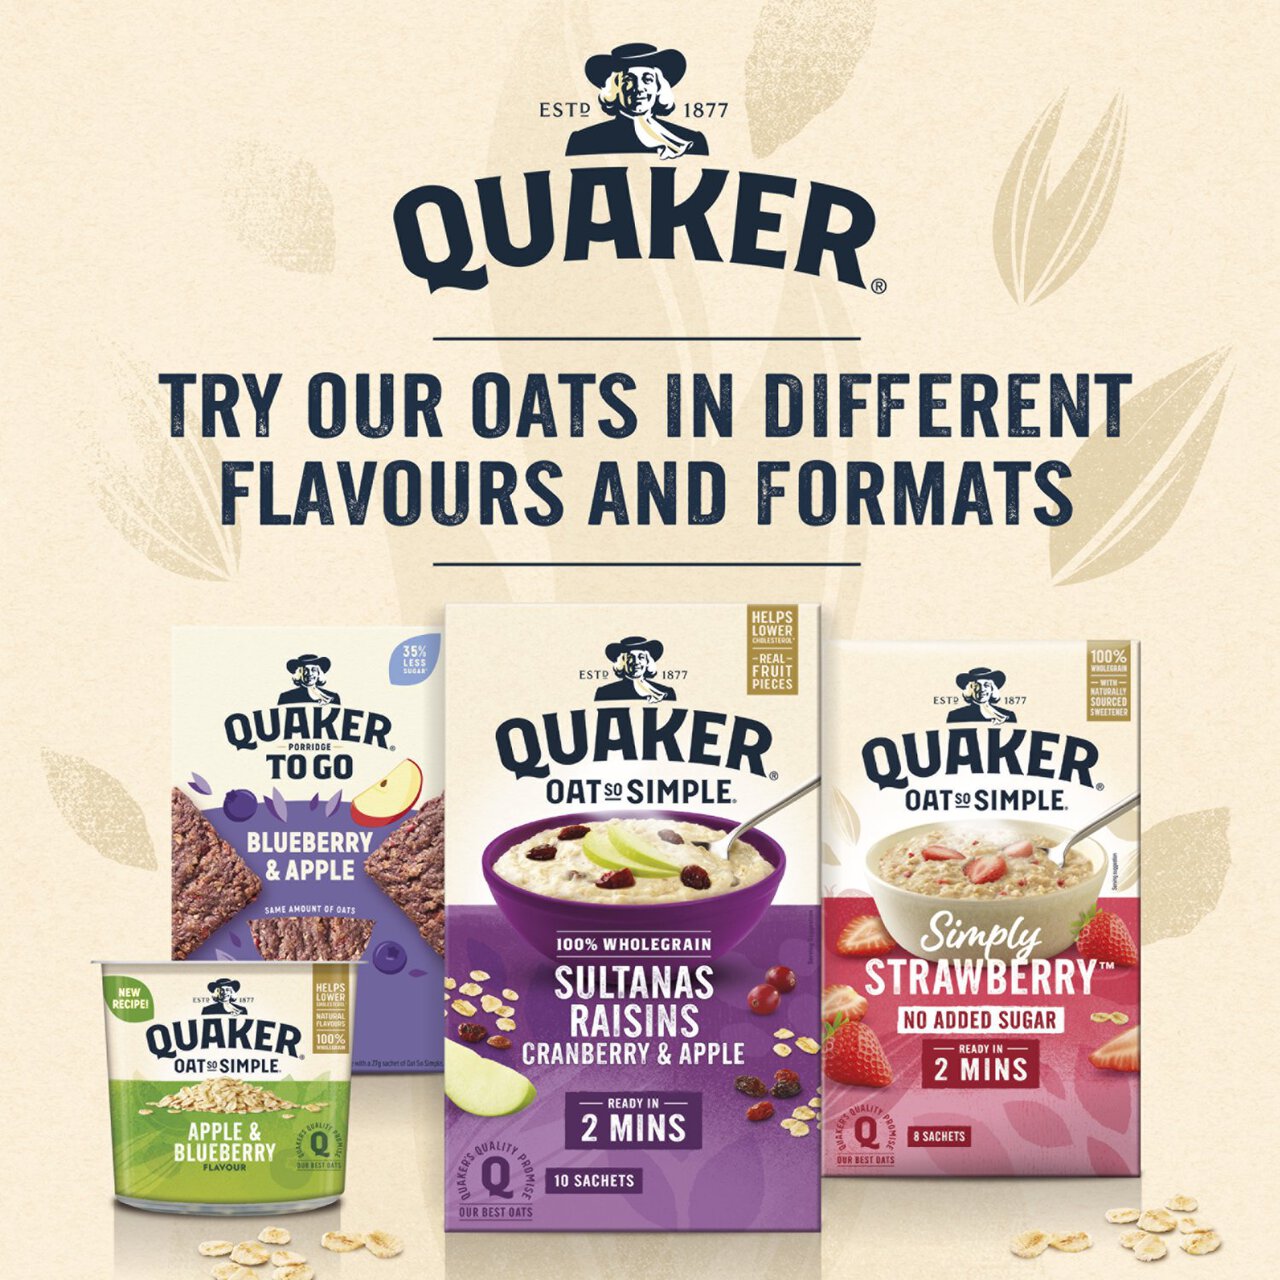 Quaker Oat So Simple Apple & Blueberry Porridge Sachets Cereal 10 per pack